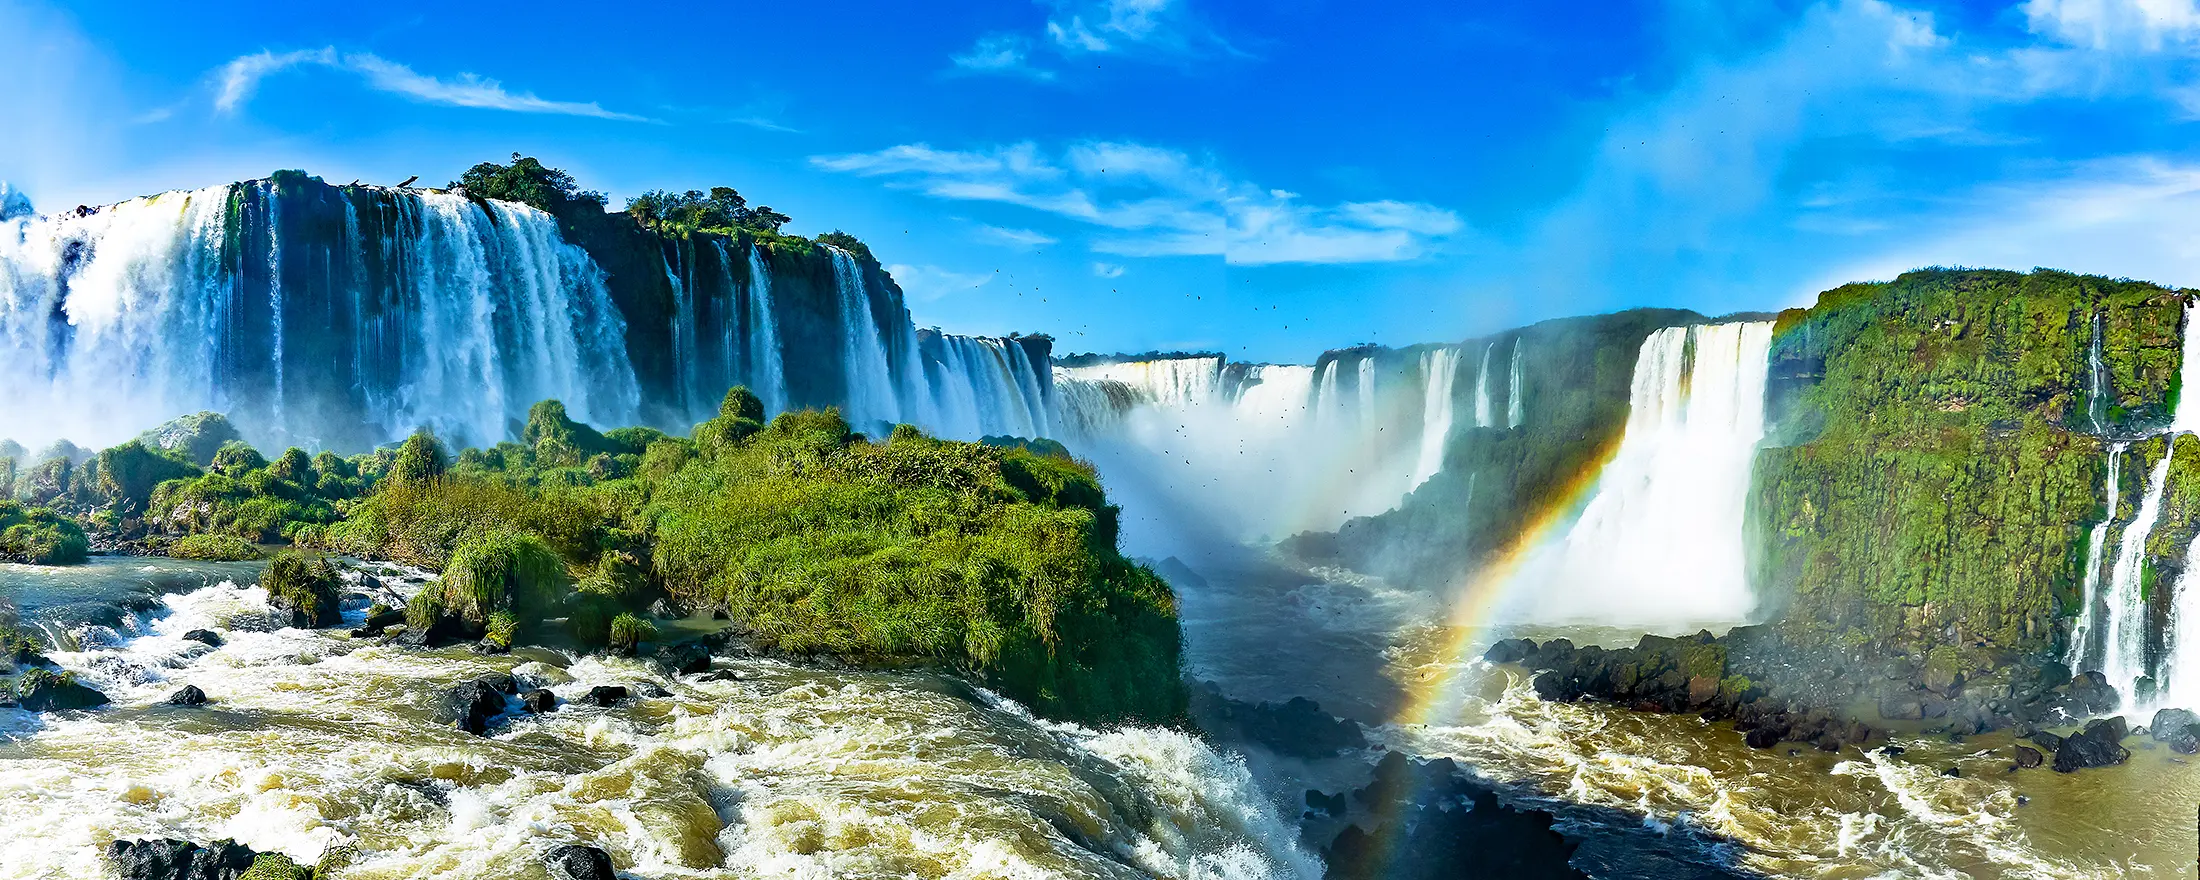 Nằm giữa biên giới Brazil và Argentina, thác Iguazu được cả hai quốc gia ra sức bảo vệ và thu hút hàng trăm nghìn du khách đến đây tham quan và nghỉ dưỡng. Thác Iguazu được người Tây Ban Nha phát hiện ra lần đầu tiên vào năm 1541. Tên thác gọi theo tiếng bản địa Guarani gồm hai âm I là lớn và Guazu là nước có nghĩa là “nước lớn”. Thác nước hình thành từ sự phun trào của núi lửa, tạo nên khe nứt trong lòng đất. Dòng dung nham rực lửa ngày trước bây giờ đã biến thành những dải nước nối nhau chảy xuống dòng sông xanh mát.